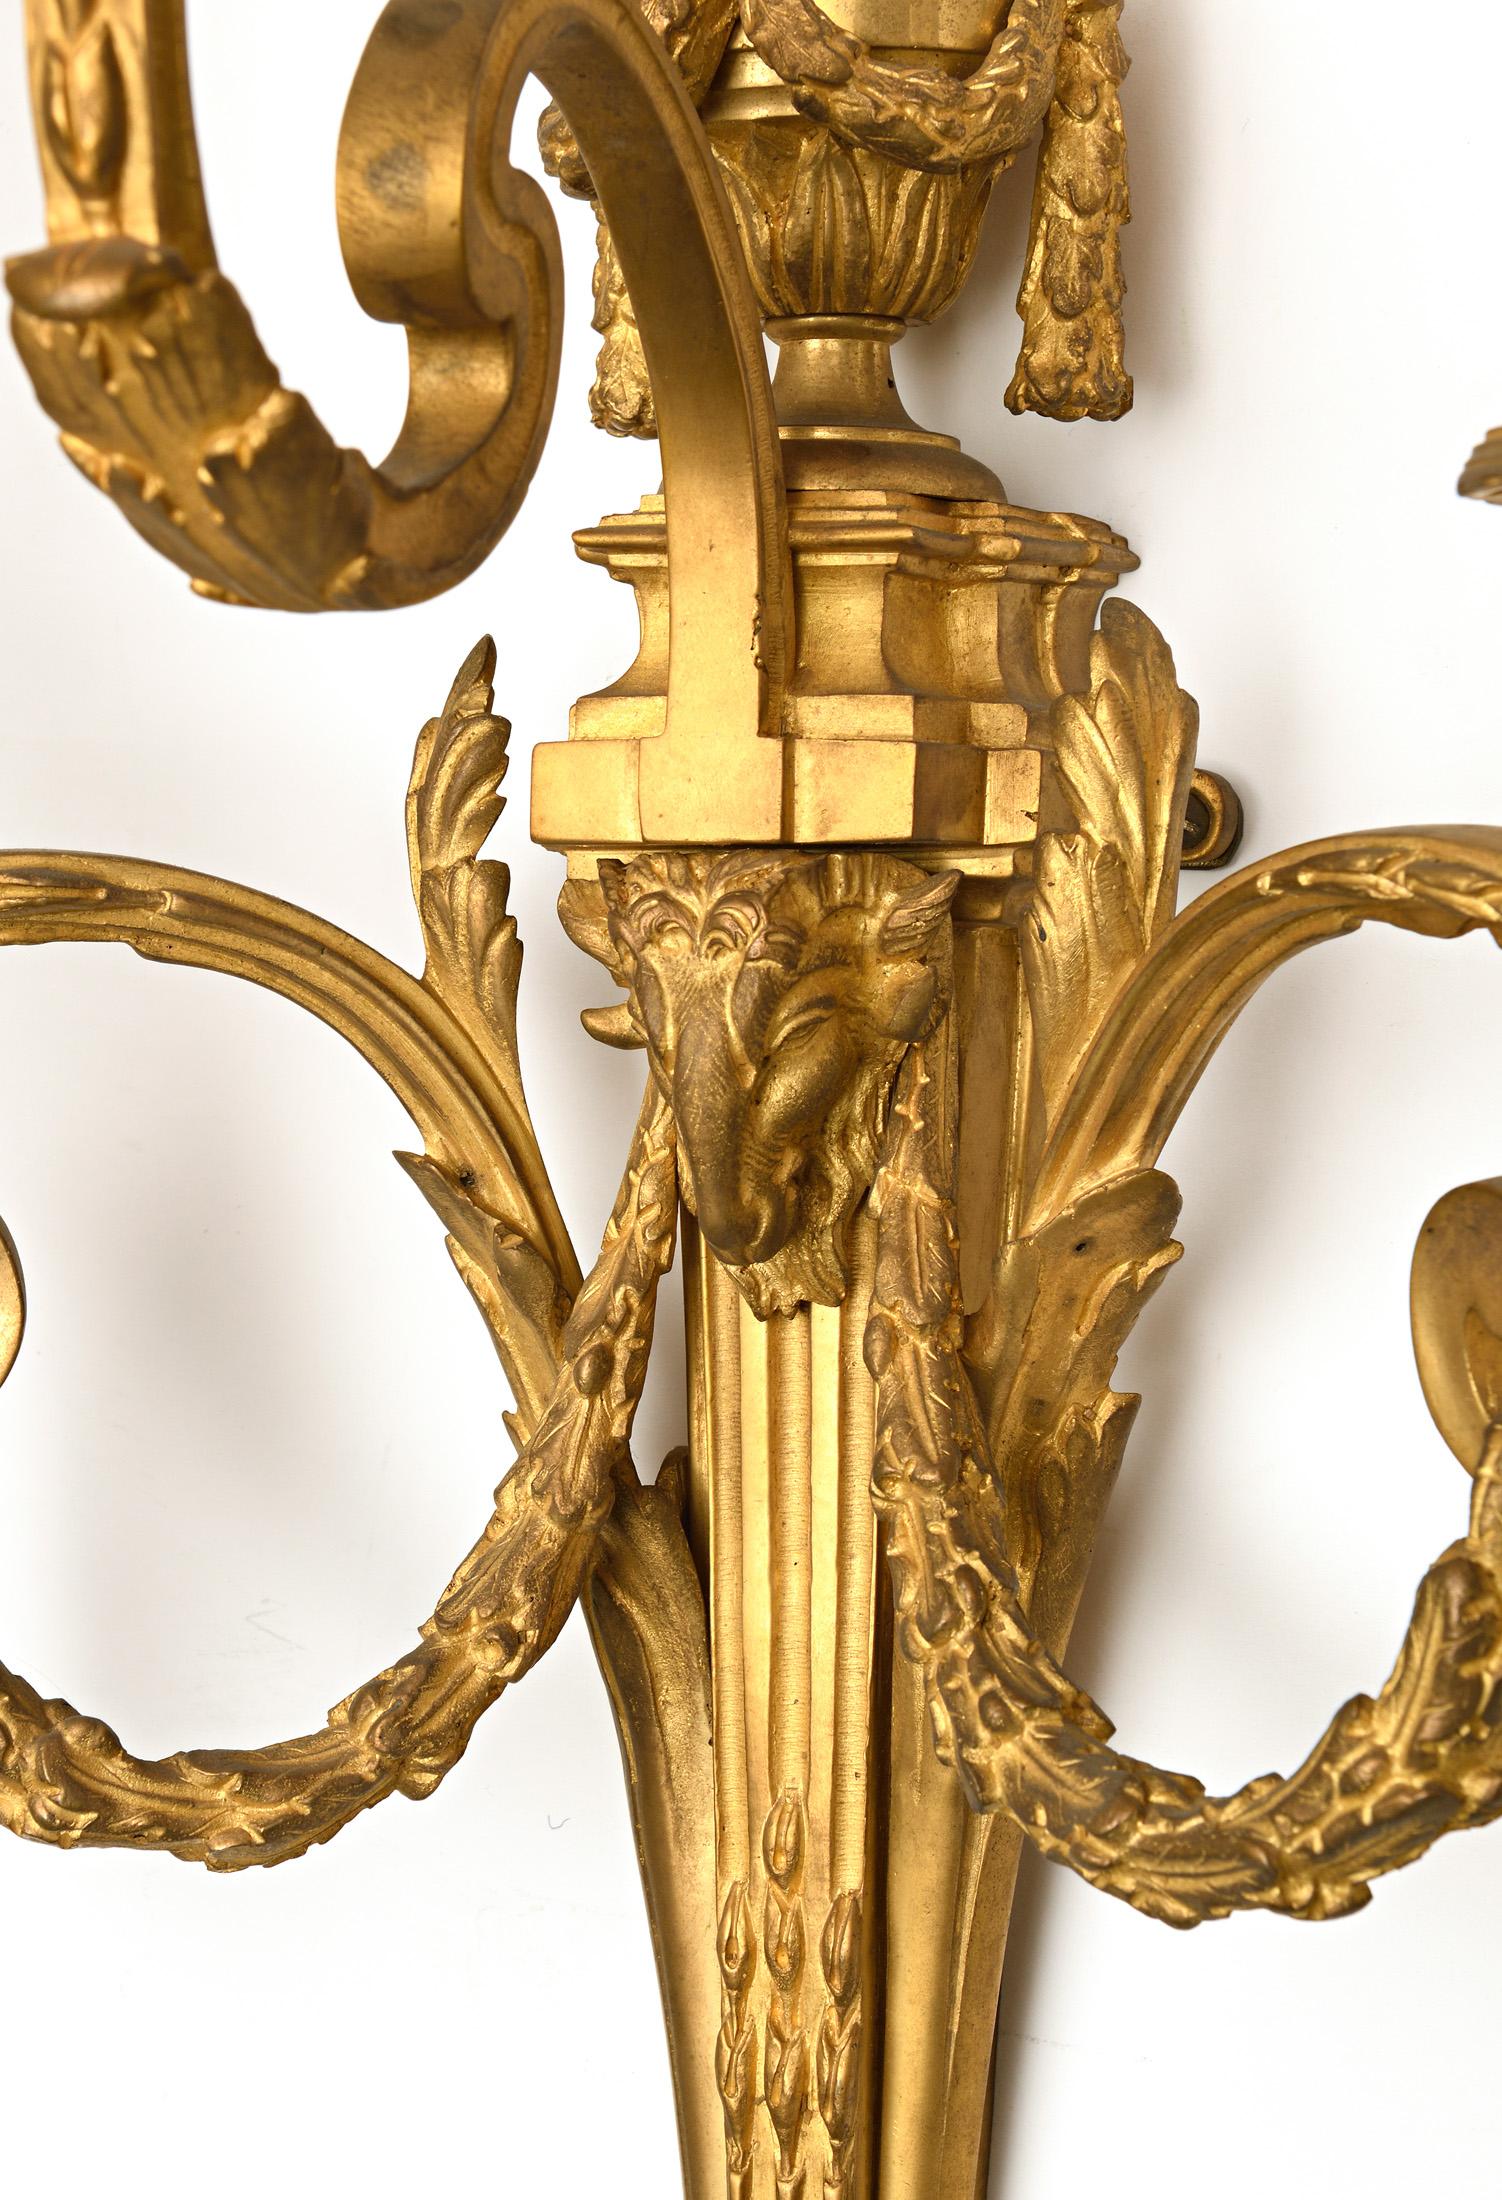 Außergewöhnliches Paar von Wandleuchtern
Hervorragende Suite von vier Louis XVI-Stil Scones in vergoldeter Bronze mit Köpfen Widder und Girlande
Diese vier Leuchter haben genau die gleiche Größe und unterscheiden sich nur geringfügig im Licht der